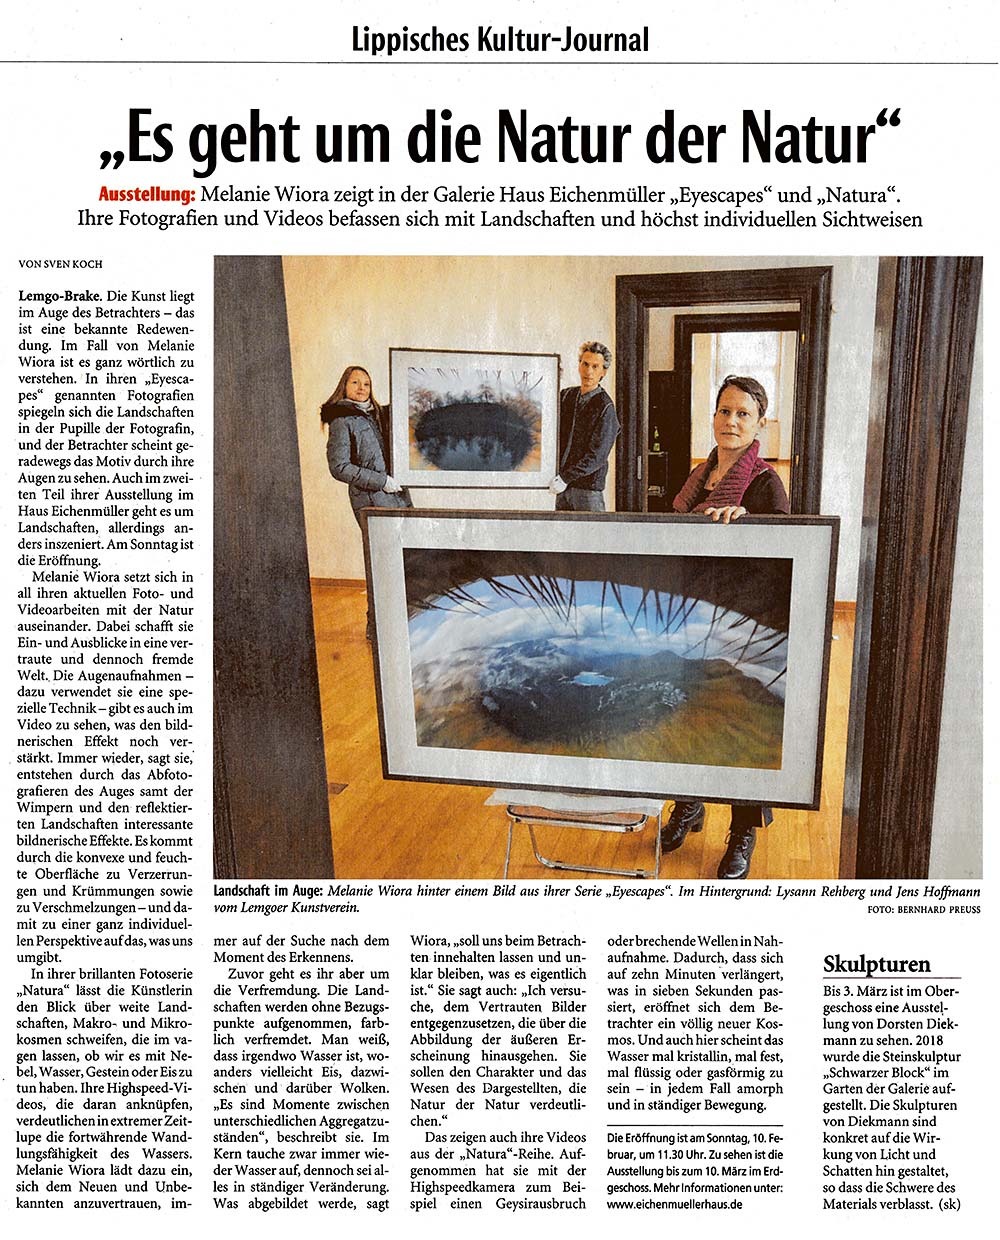 „Es geht um die Natur der Natur“, Lippisches Kultur-Journal, 8. Februar 2019